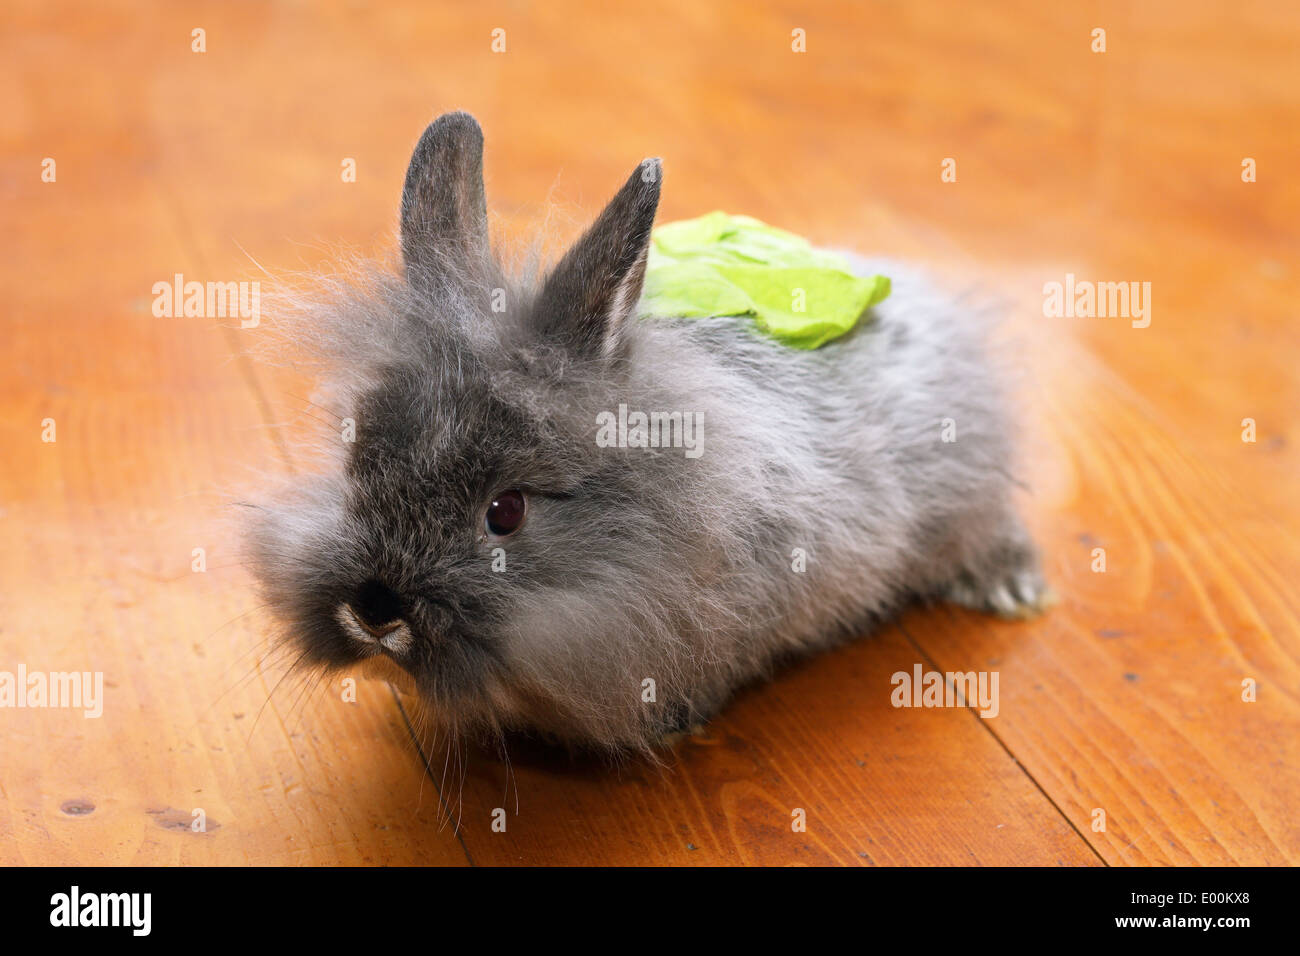 Bébé lapin drôle avec une salade à l'arrière debout sur un plancher en bois Banque D'Images